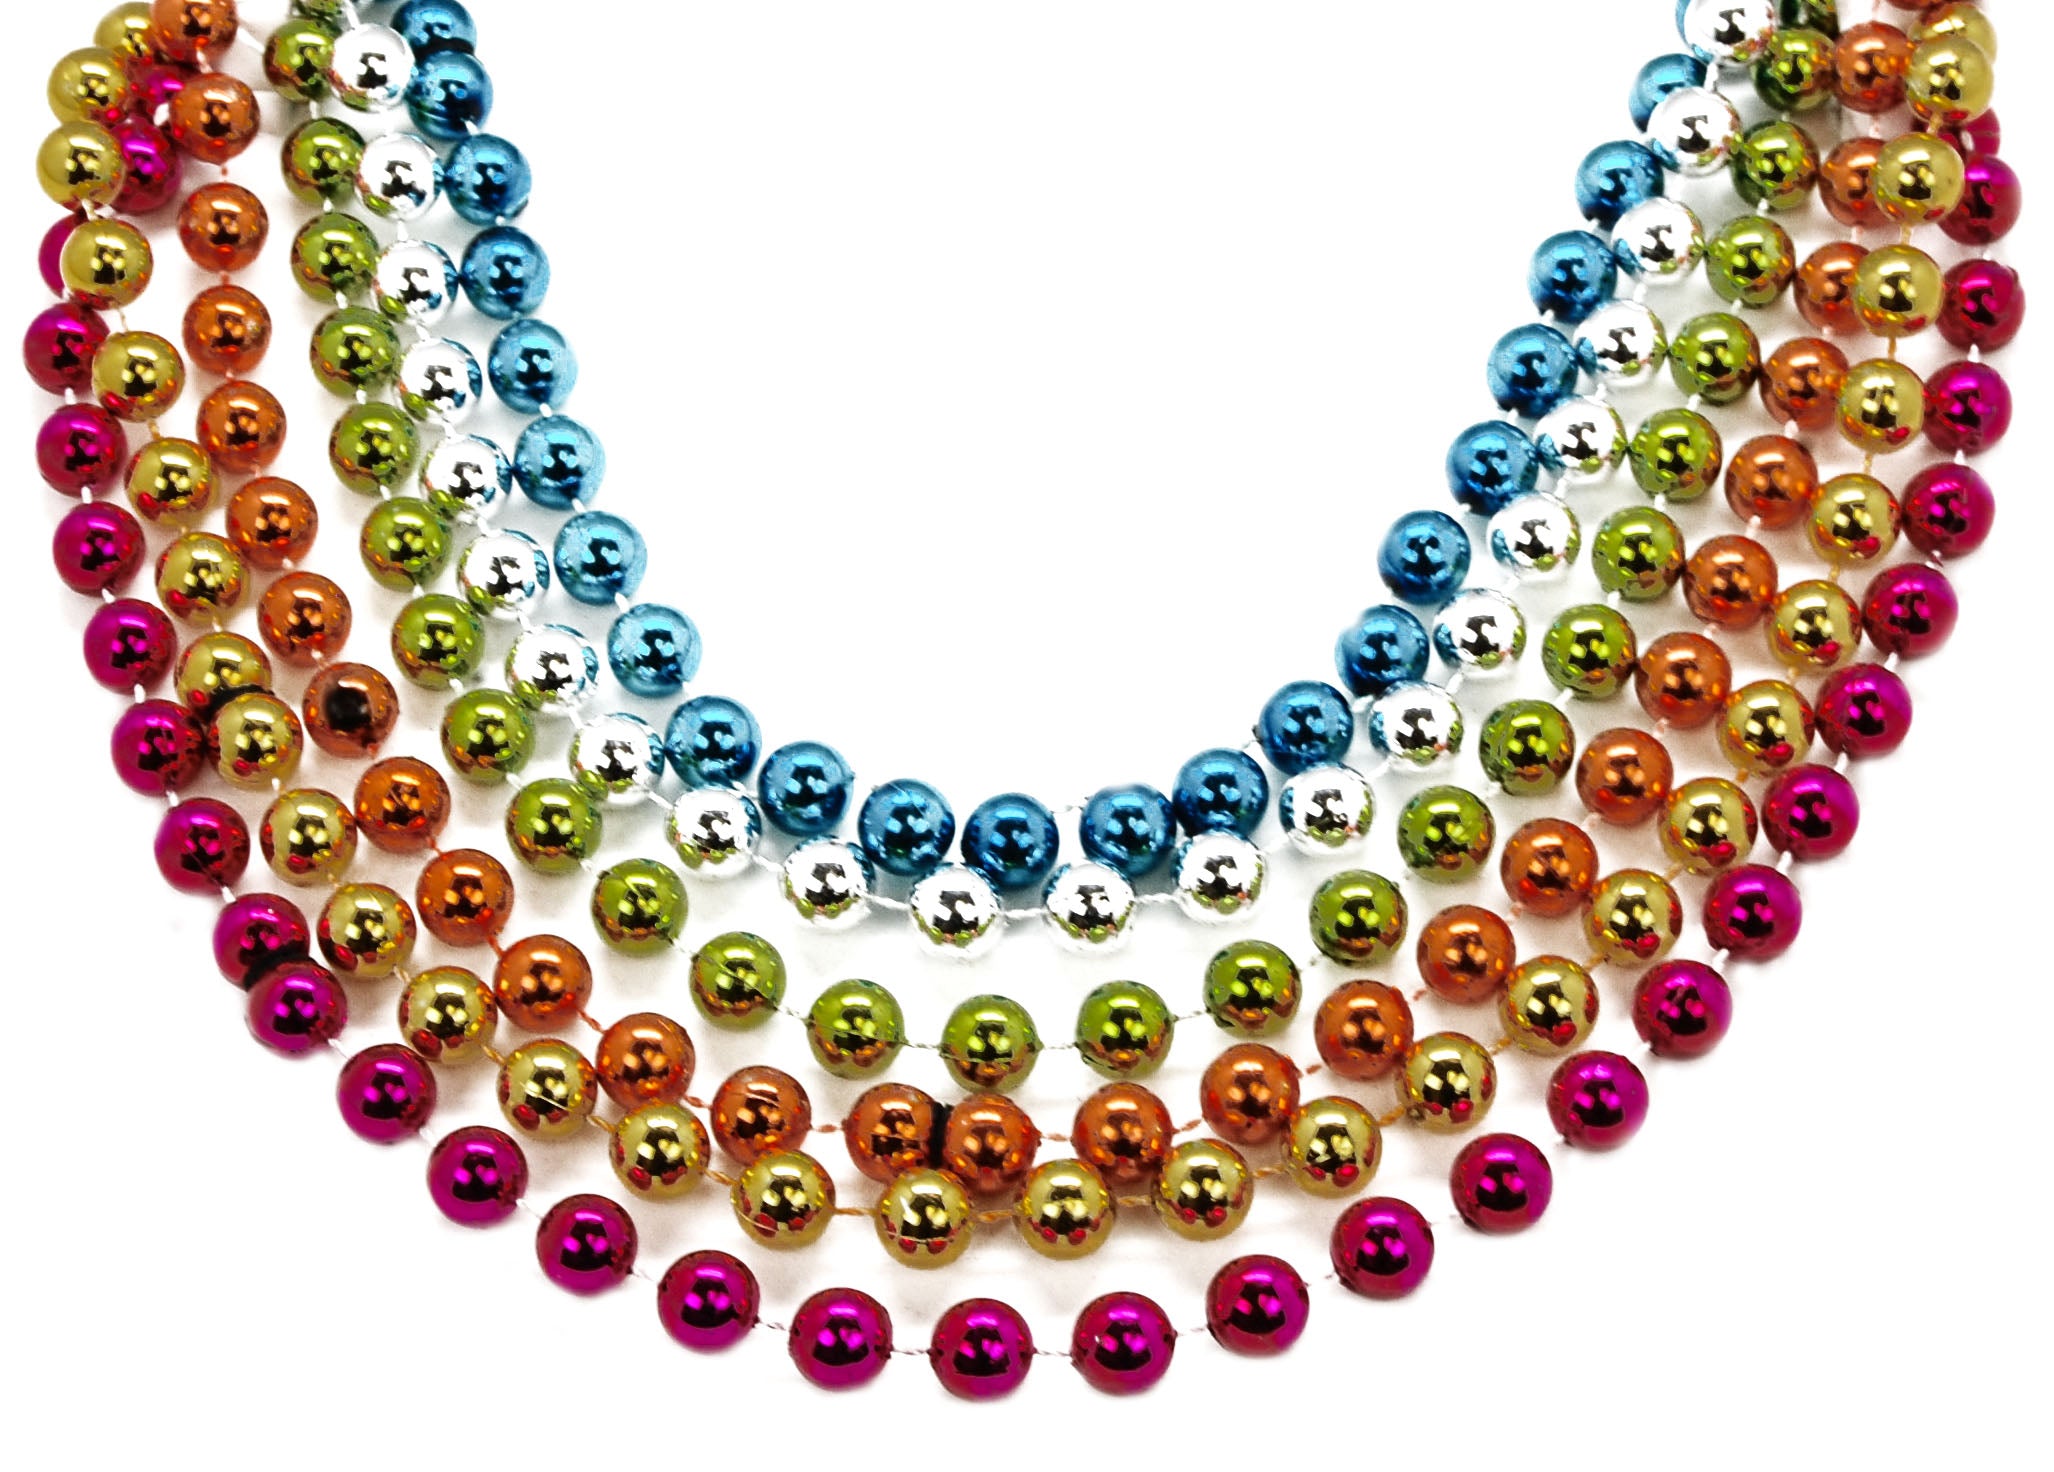 72" 12mm Round Beads Neon